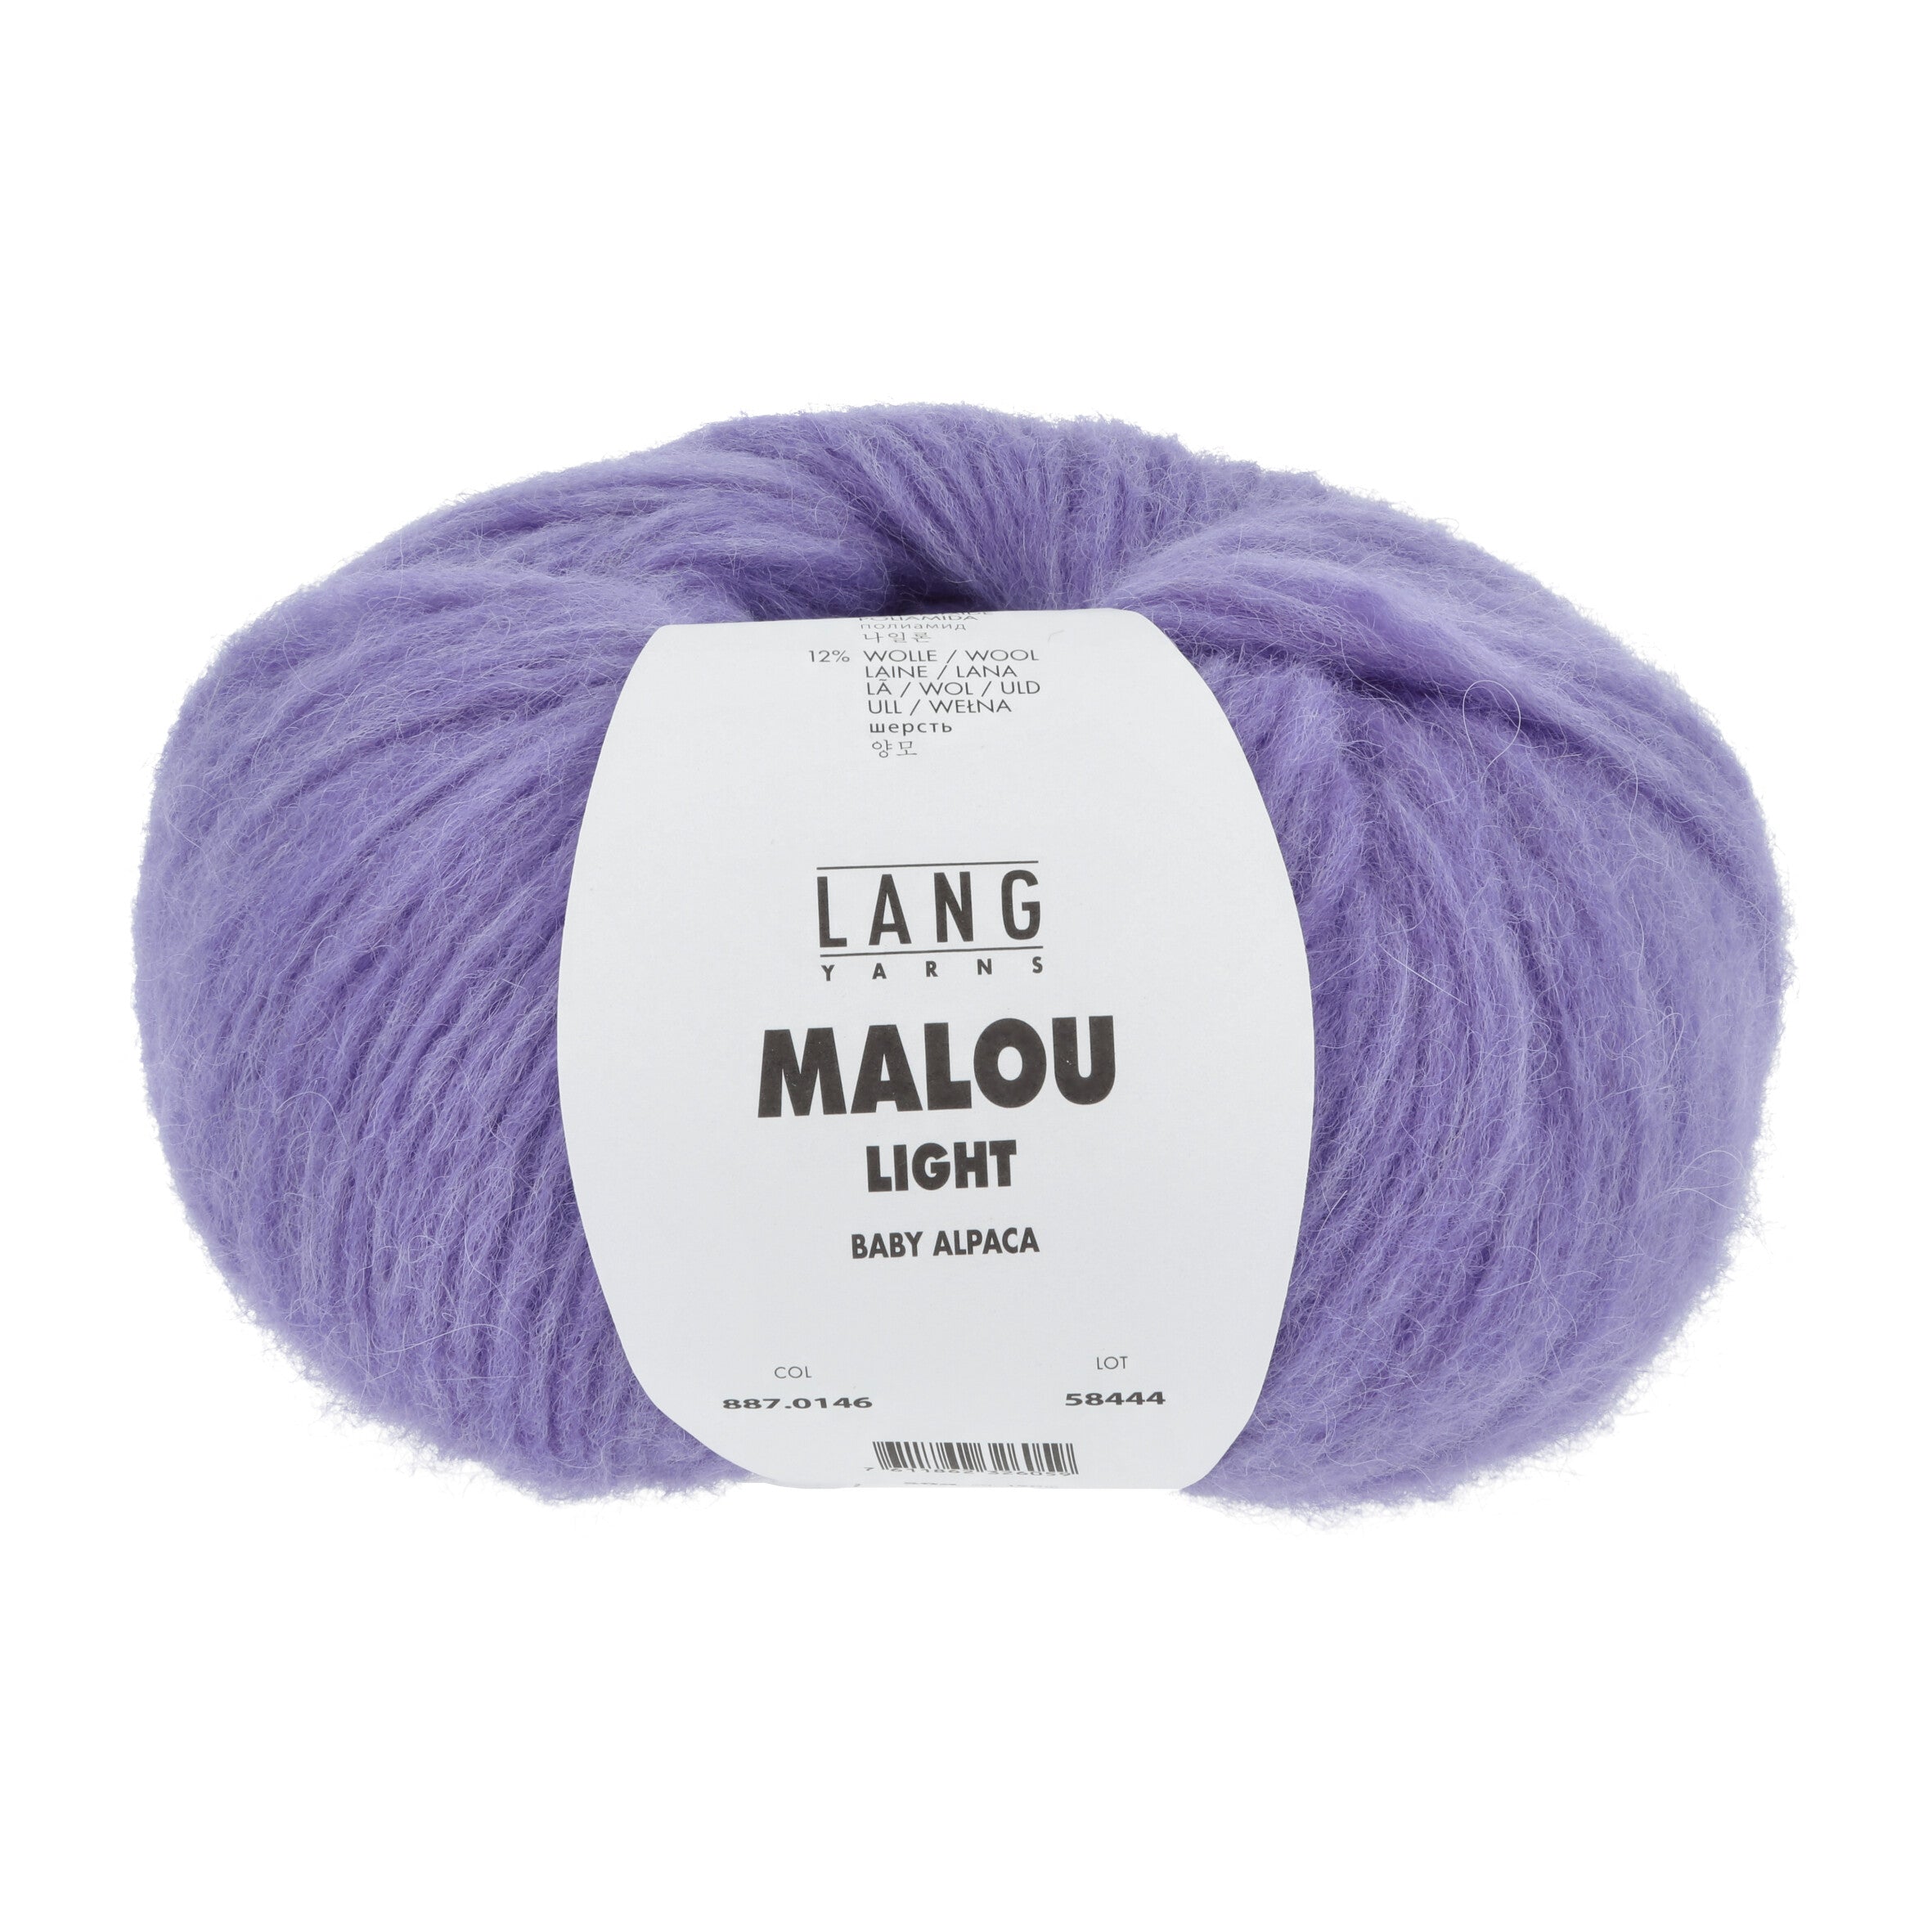 MALOU LIGHT von LANG YARNS jetzt online kaufen bei OONIQUE